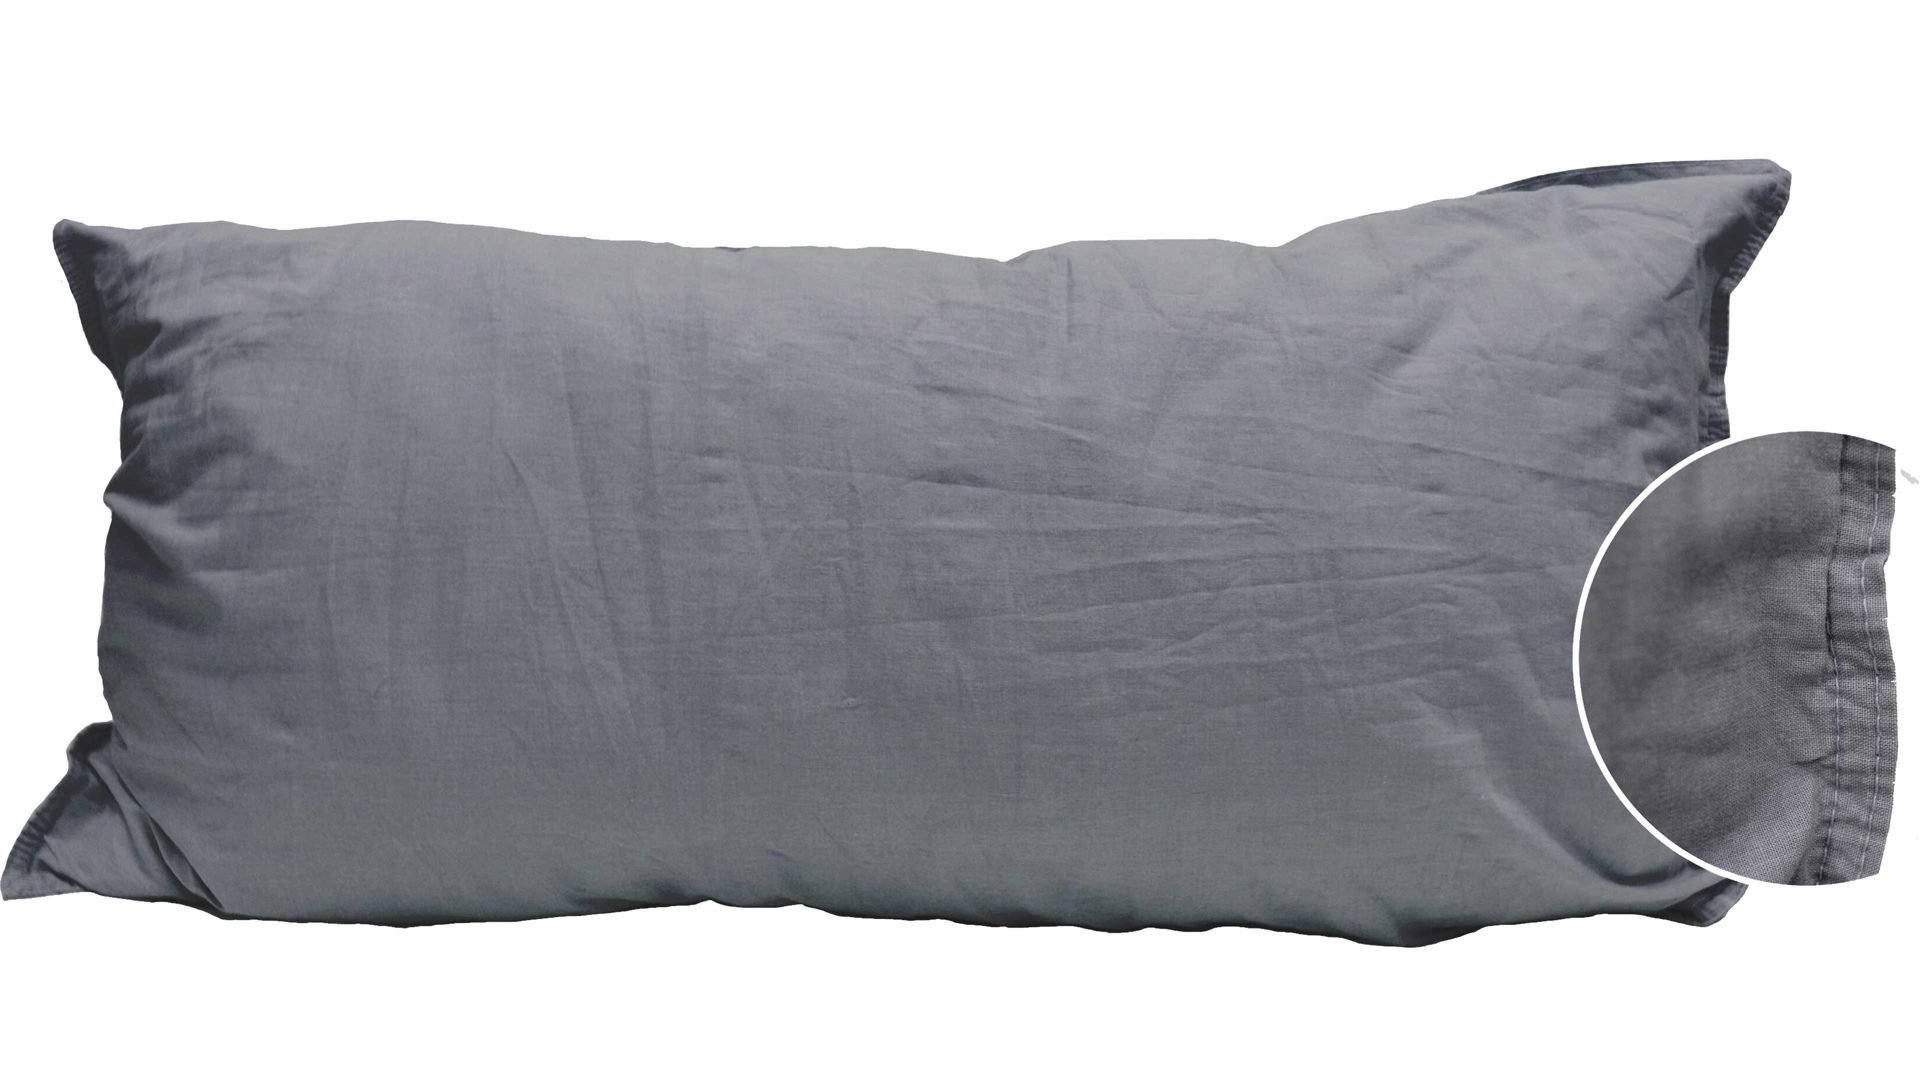 Kissenbezug /-hülle H.g. hahn haustextilien aus Stoff in Anthrazit Kissenbezug Stone Washed anthrazitfarbene Baumwolle – ca. 40 x 80 cm